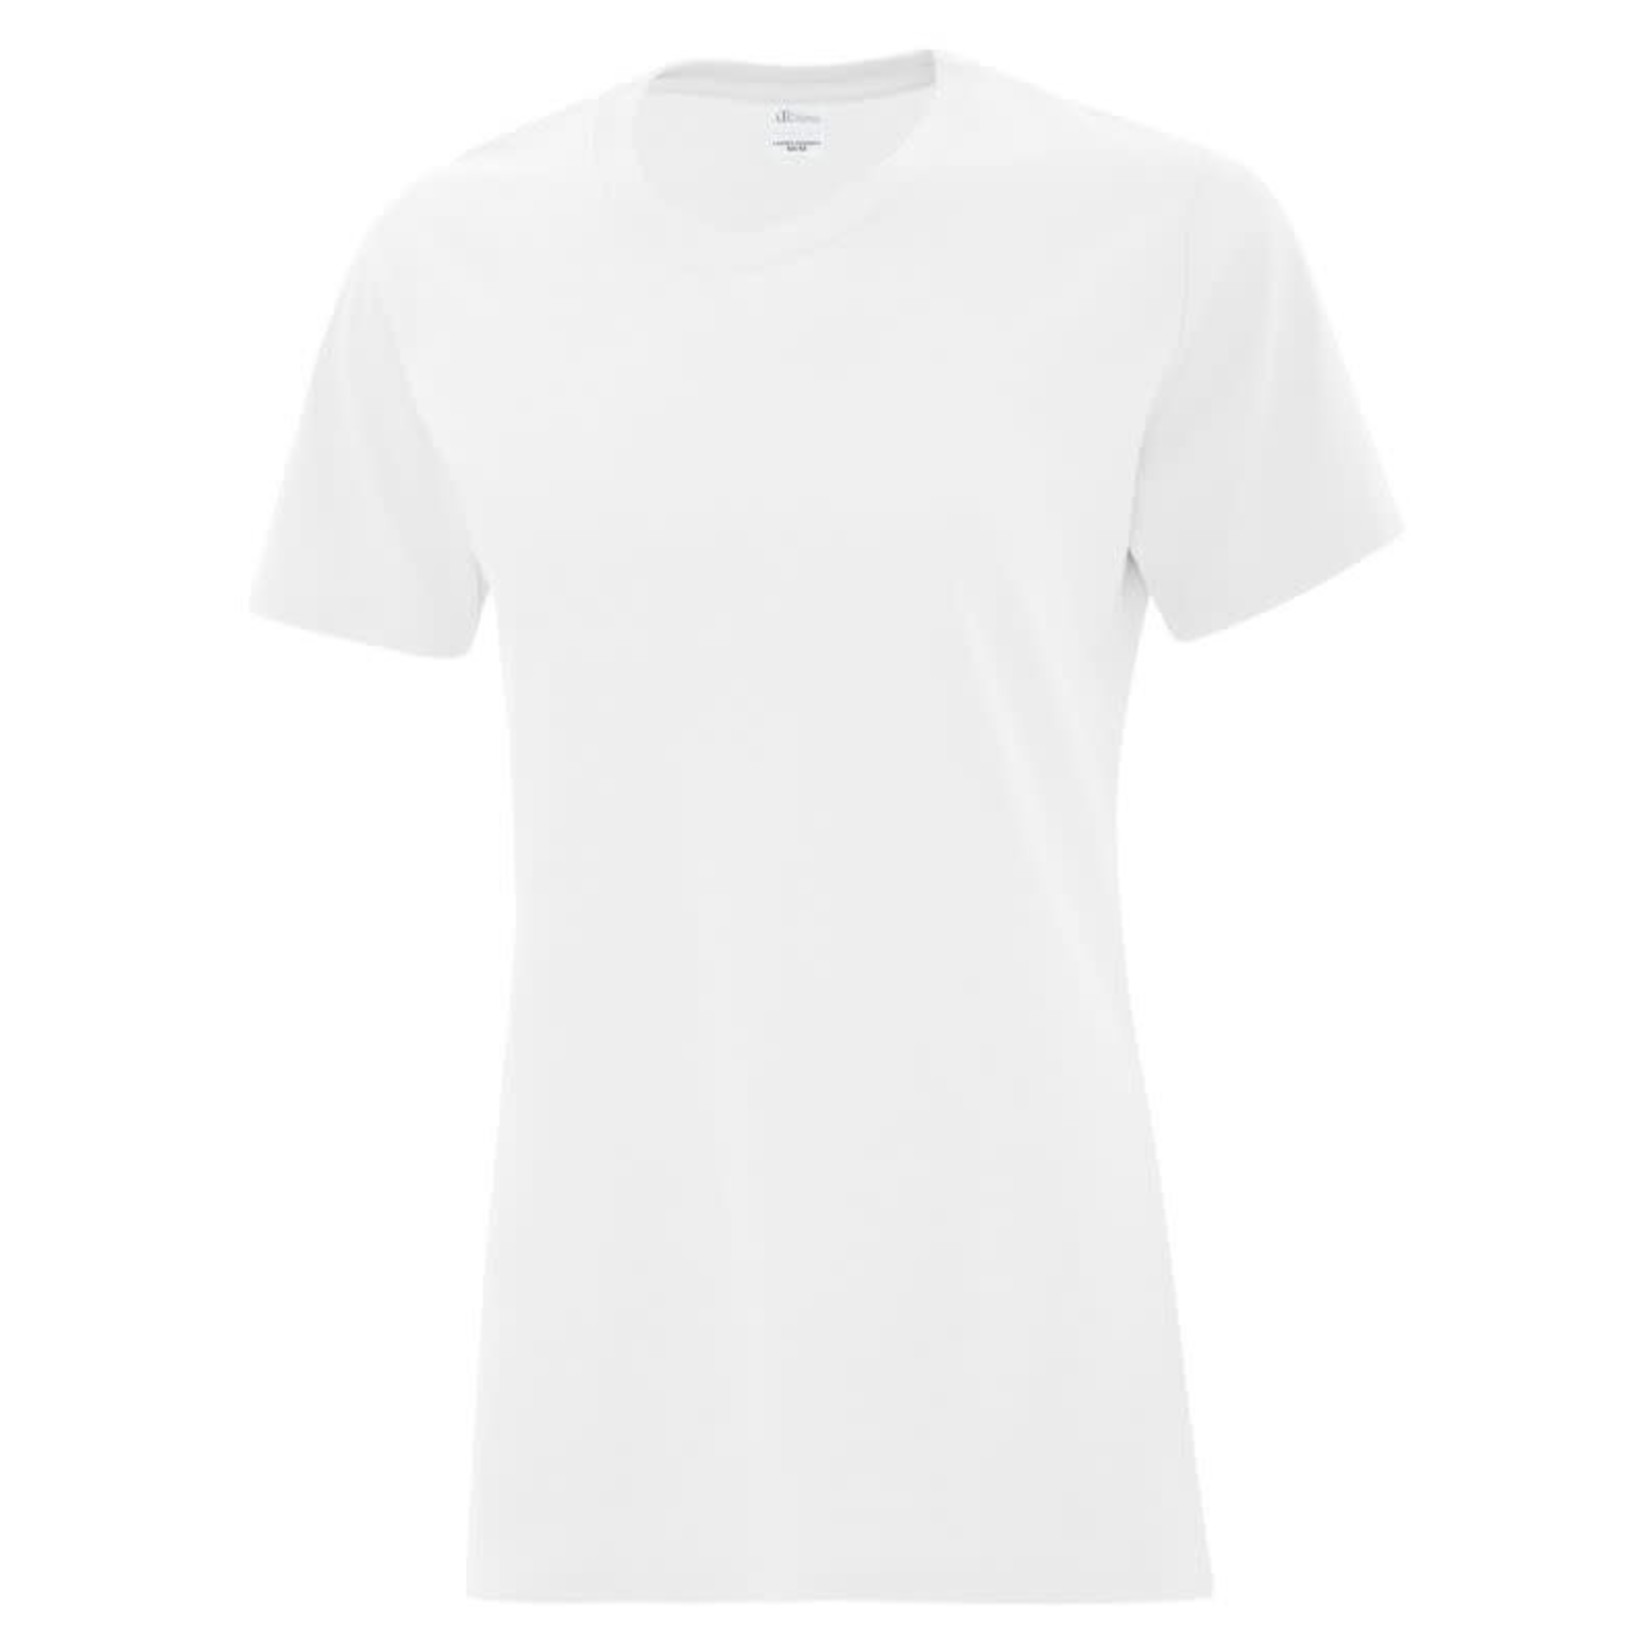 T-shirt Coton Santé assistance et soins infirmiers - Femme